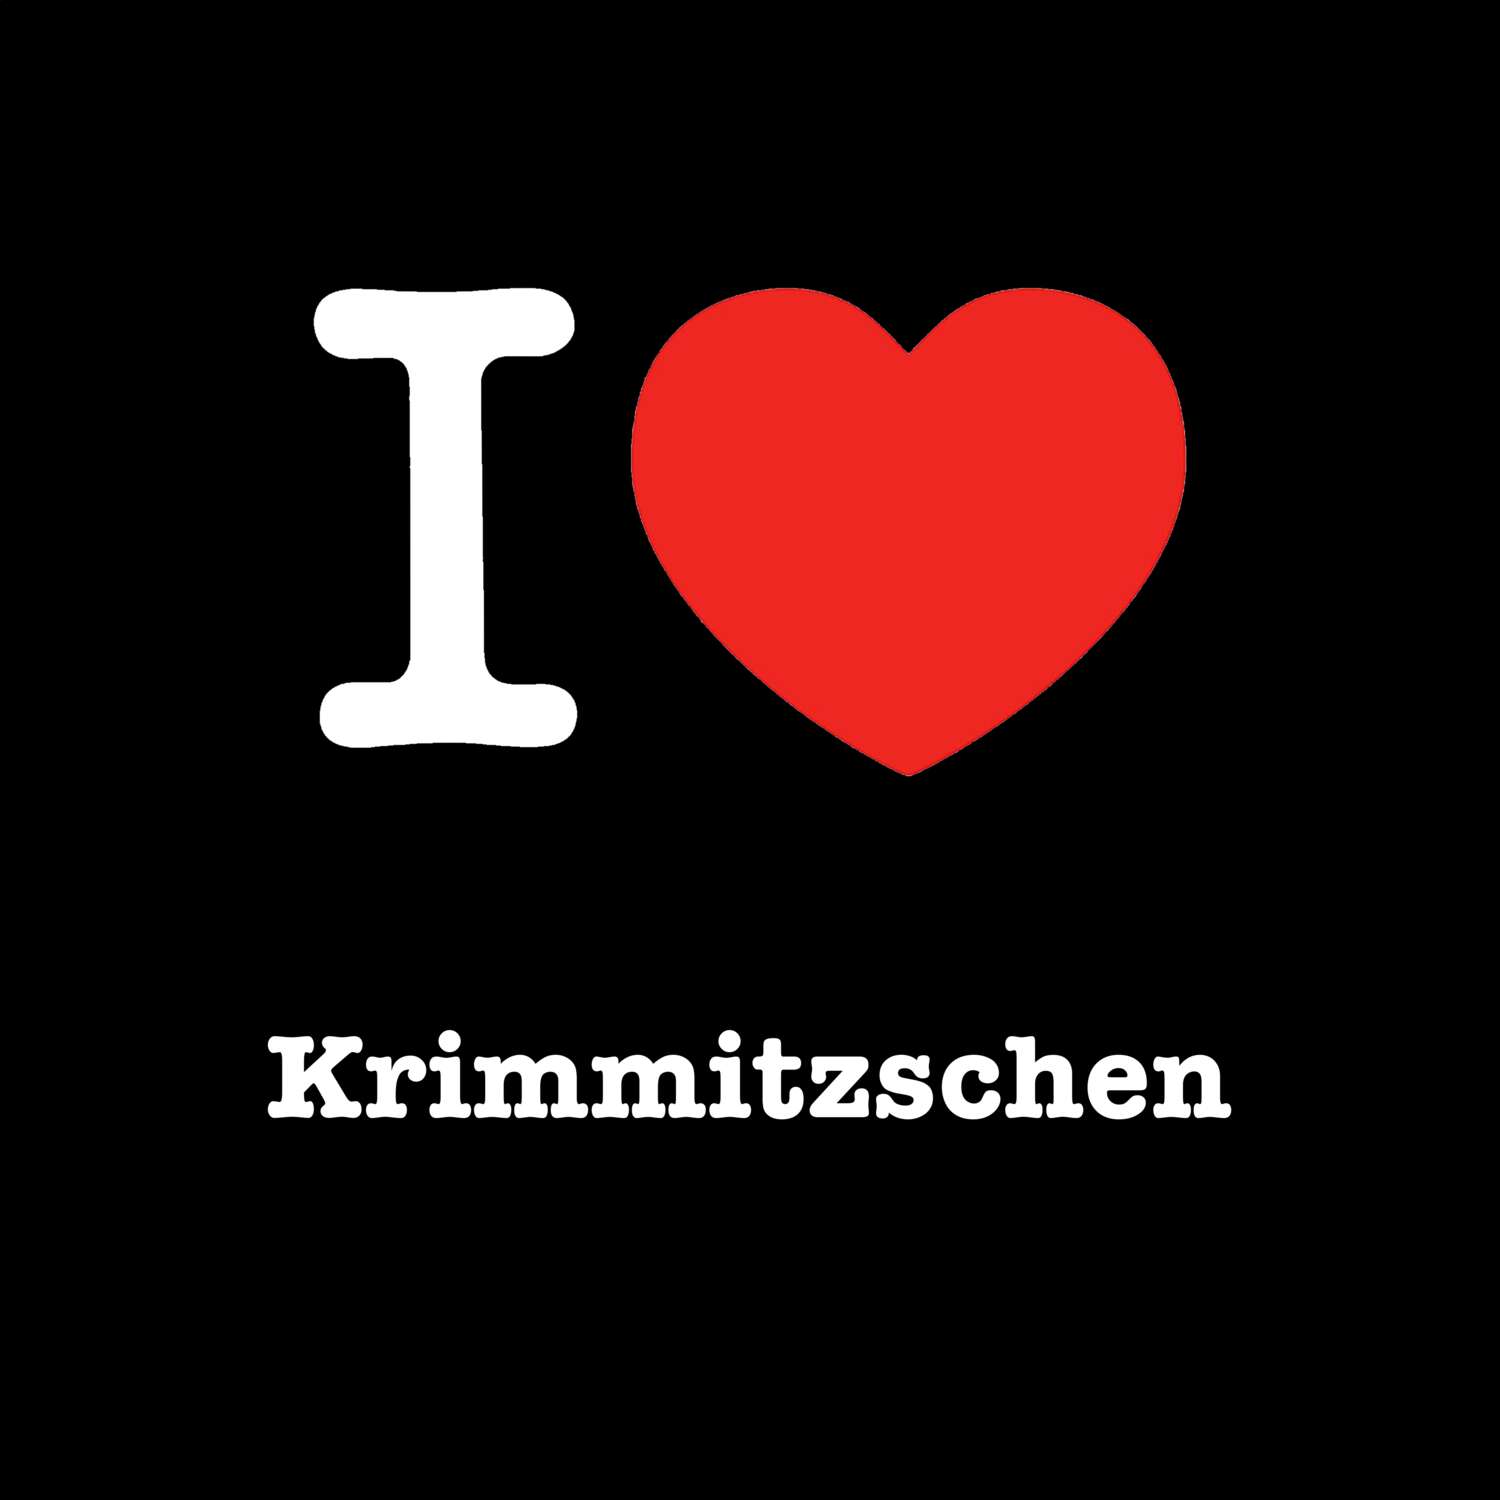 Krimmitzschen T-Shirt »I love«